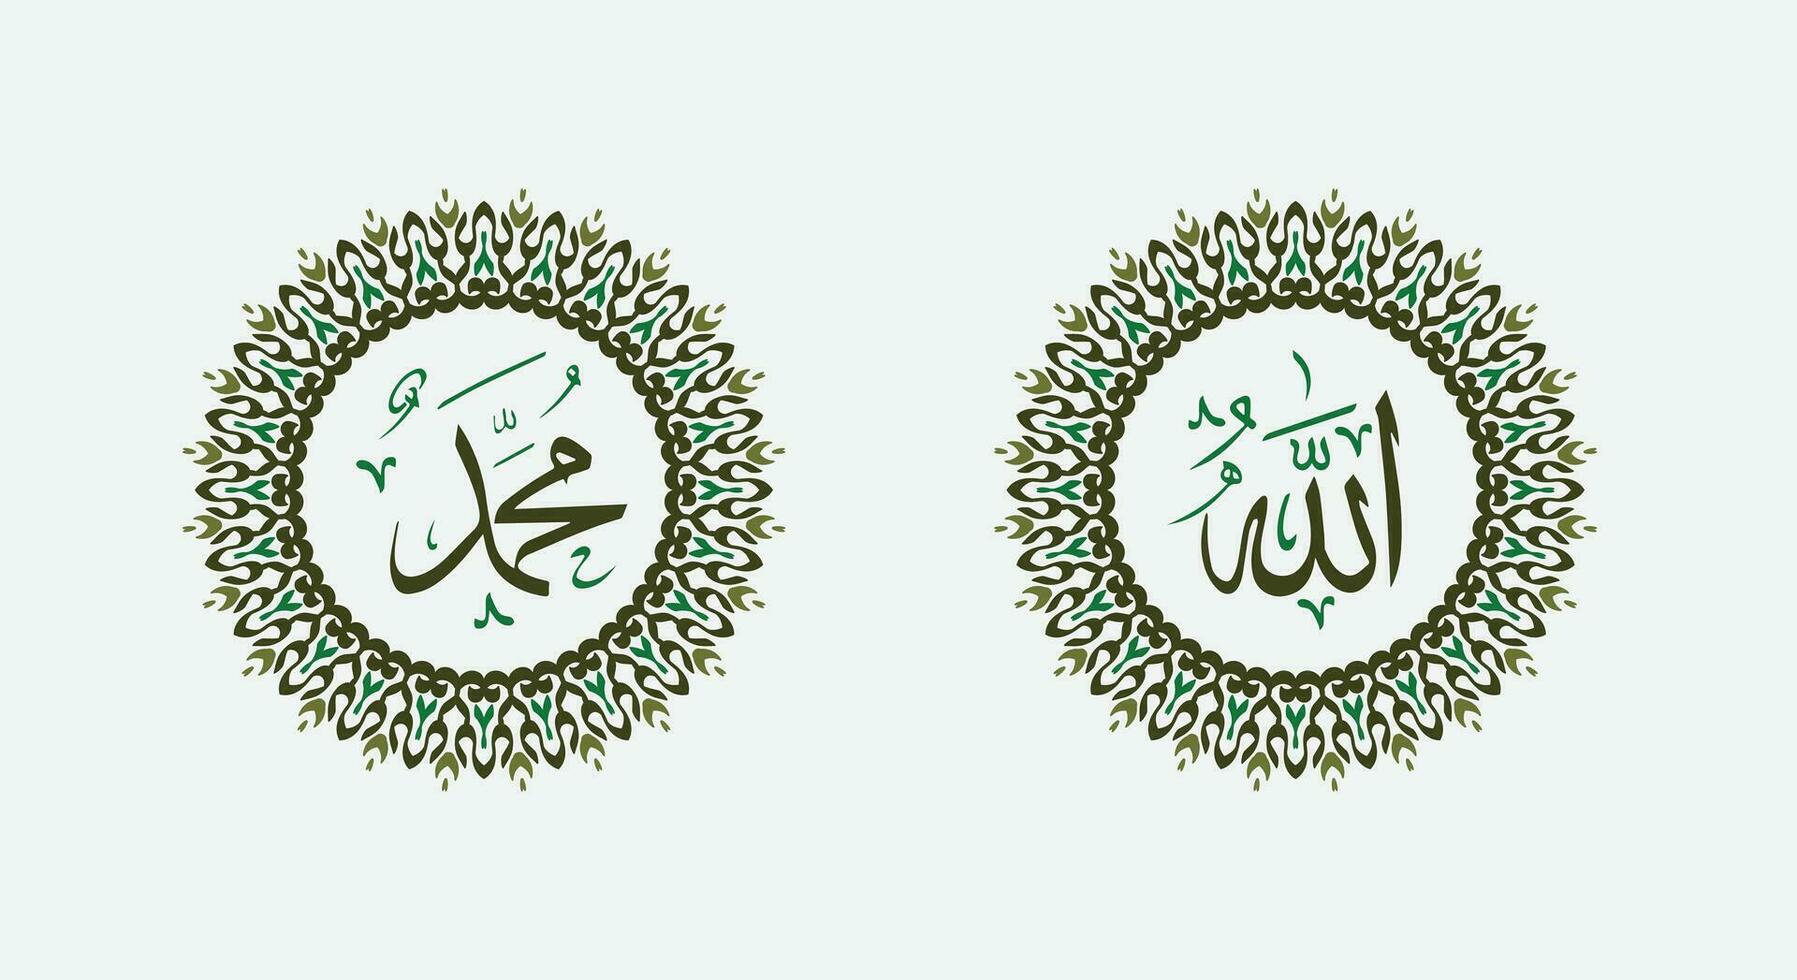 Allah Mohammed naam van Allah Mohammed, Allah Mohammed Arabisch Islamitisch schoonschrift kunst, met traditioneel kader en groen kleur vector